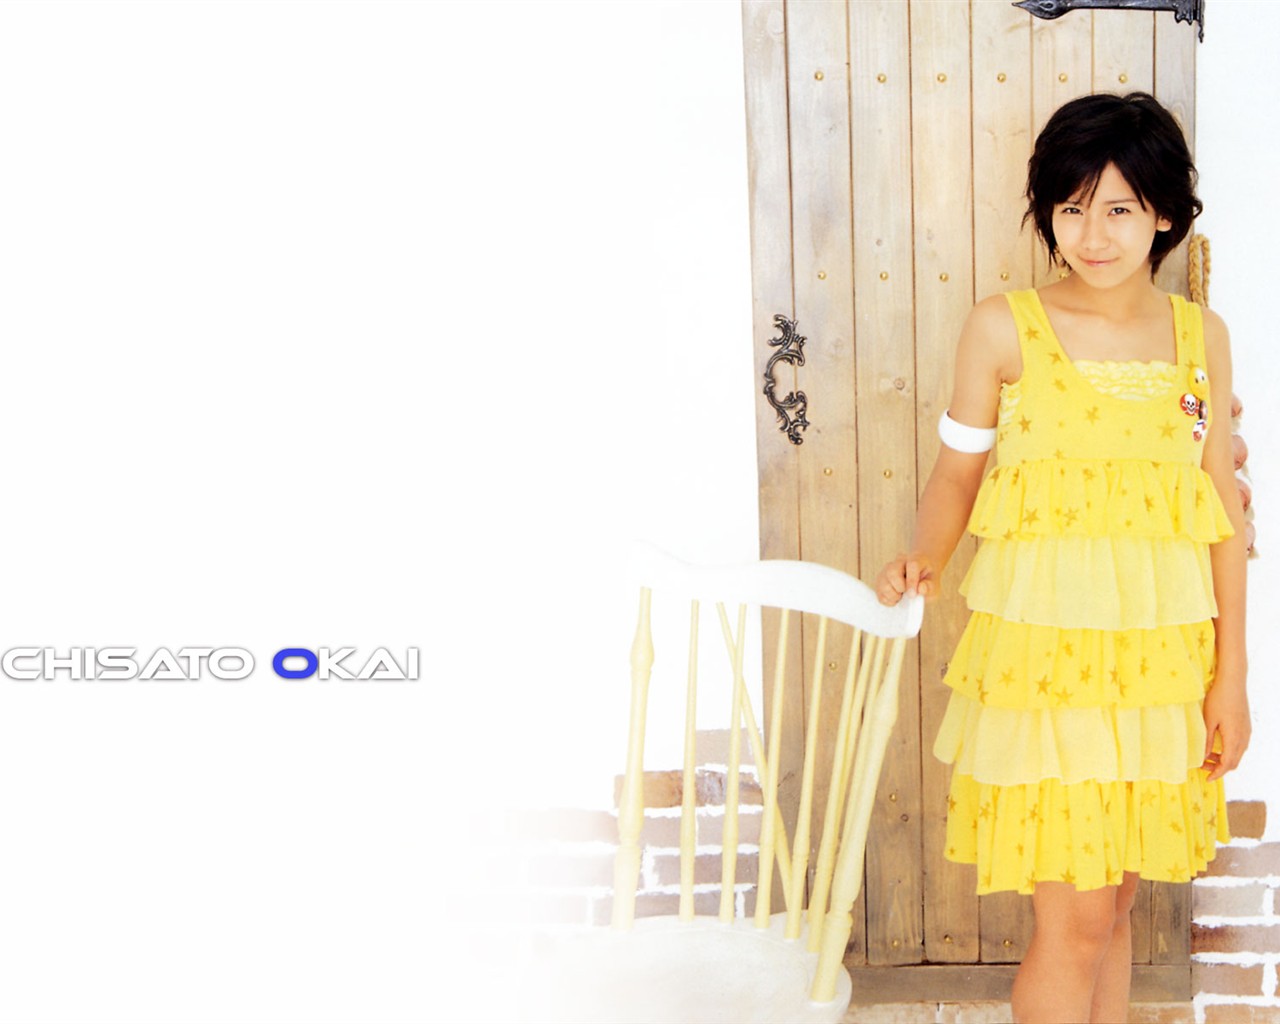 Cute belleza japonesa portafolio de fotos #6 - 1280x1024